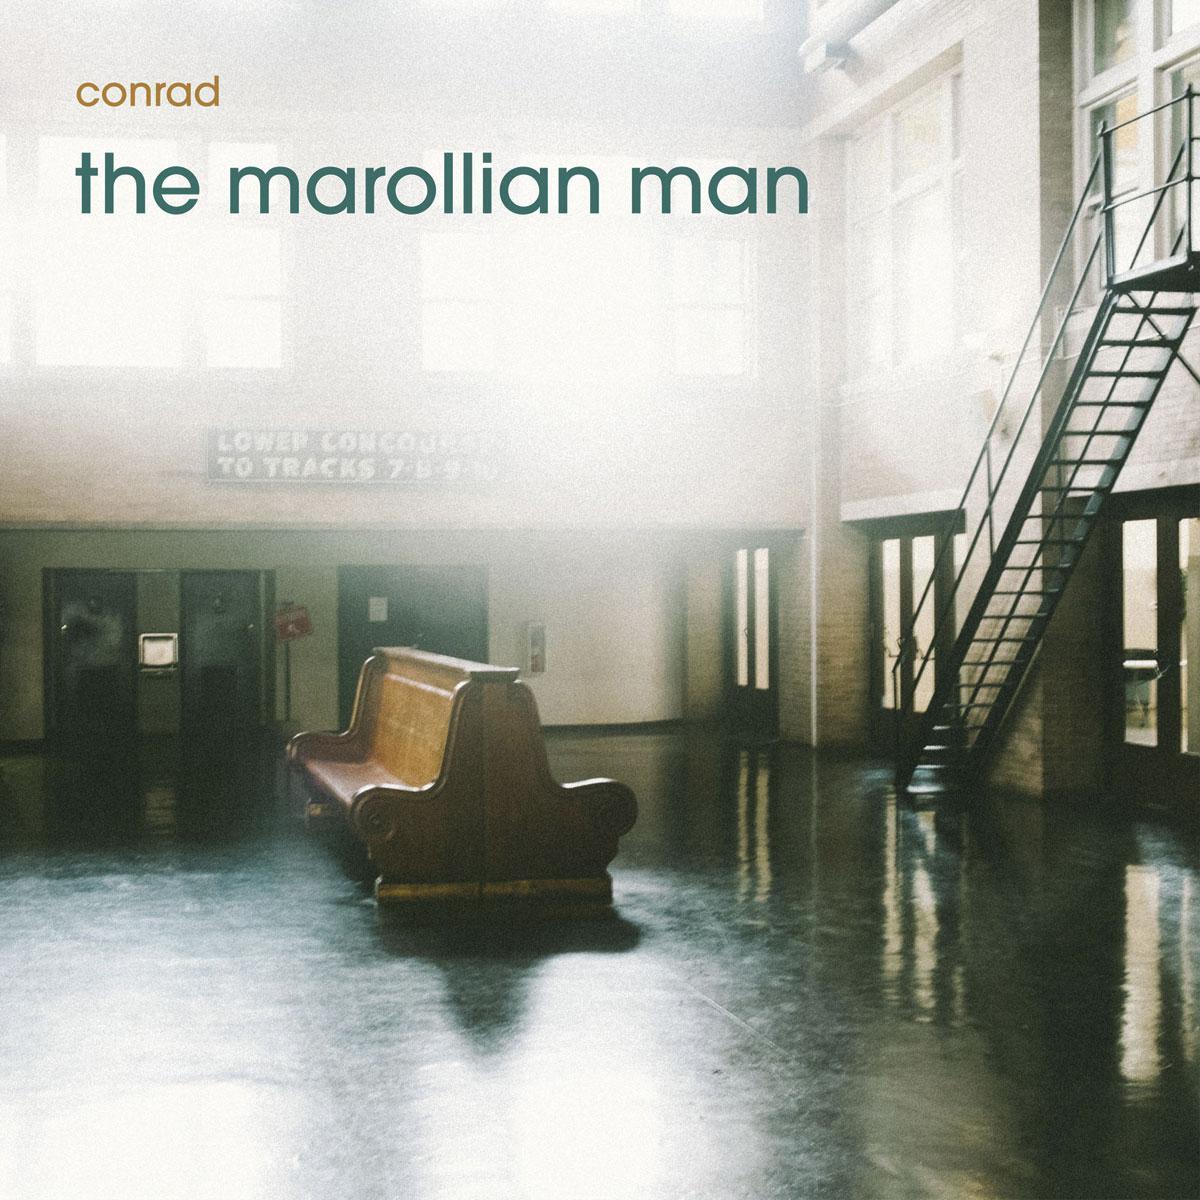 Conrad, The Marollian Man, is beschikbaar op alle platformen. De ep Songs of Hope and Grit verschijnt in juni.